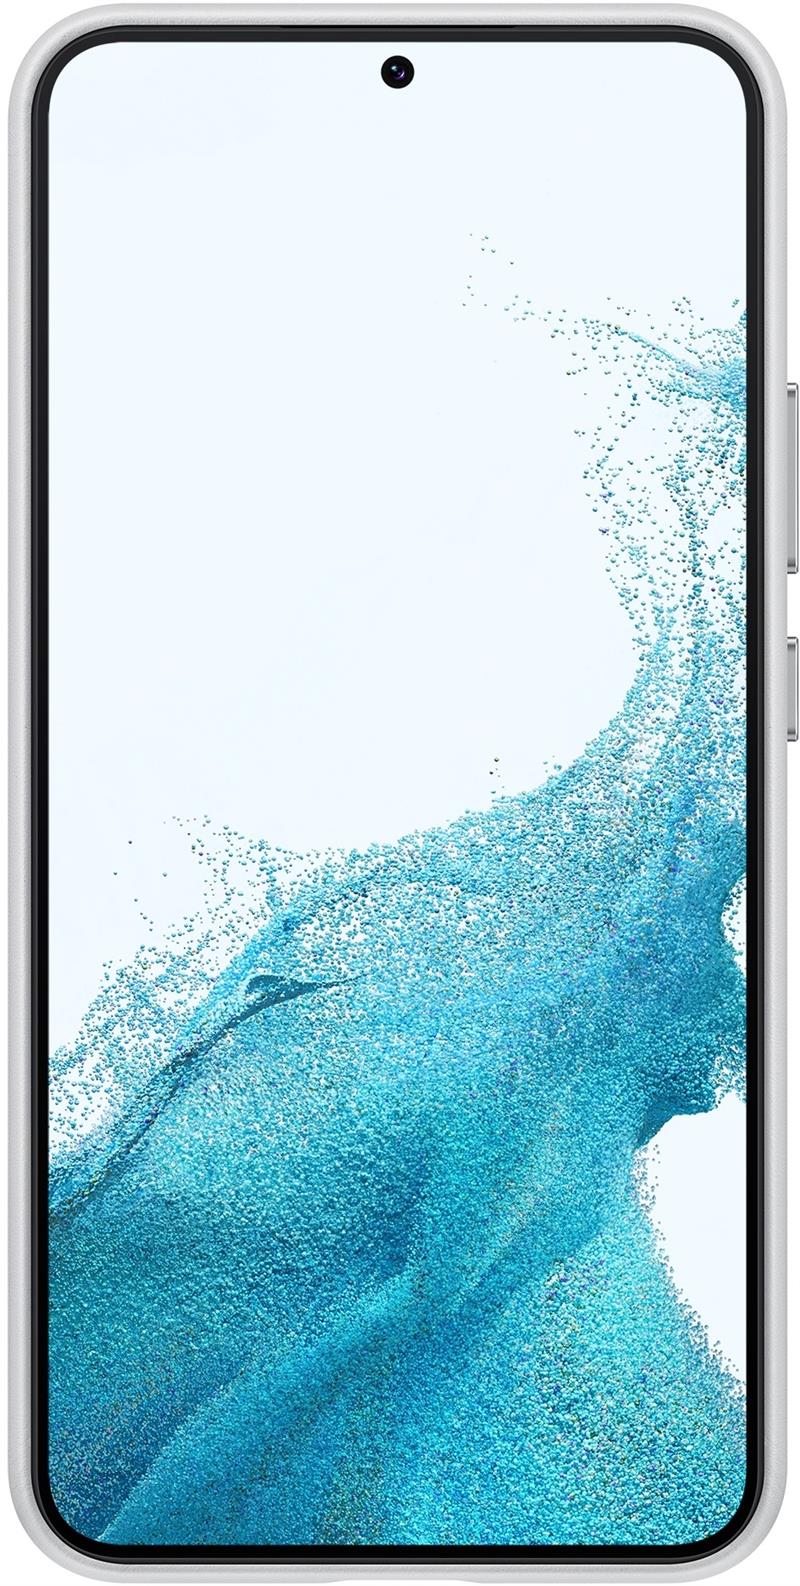 Samsung EF-VS906L mobiele telefoon behuizingen 16,8 cm (6.6"") Hoes Grijs